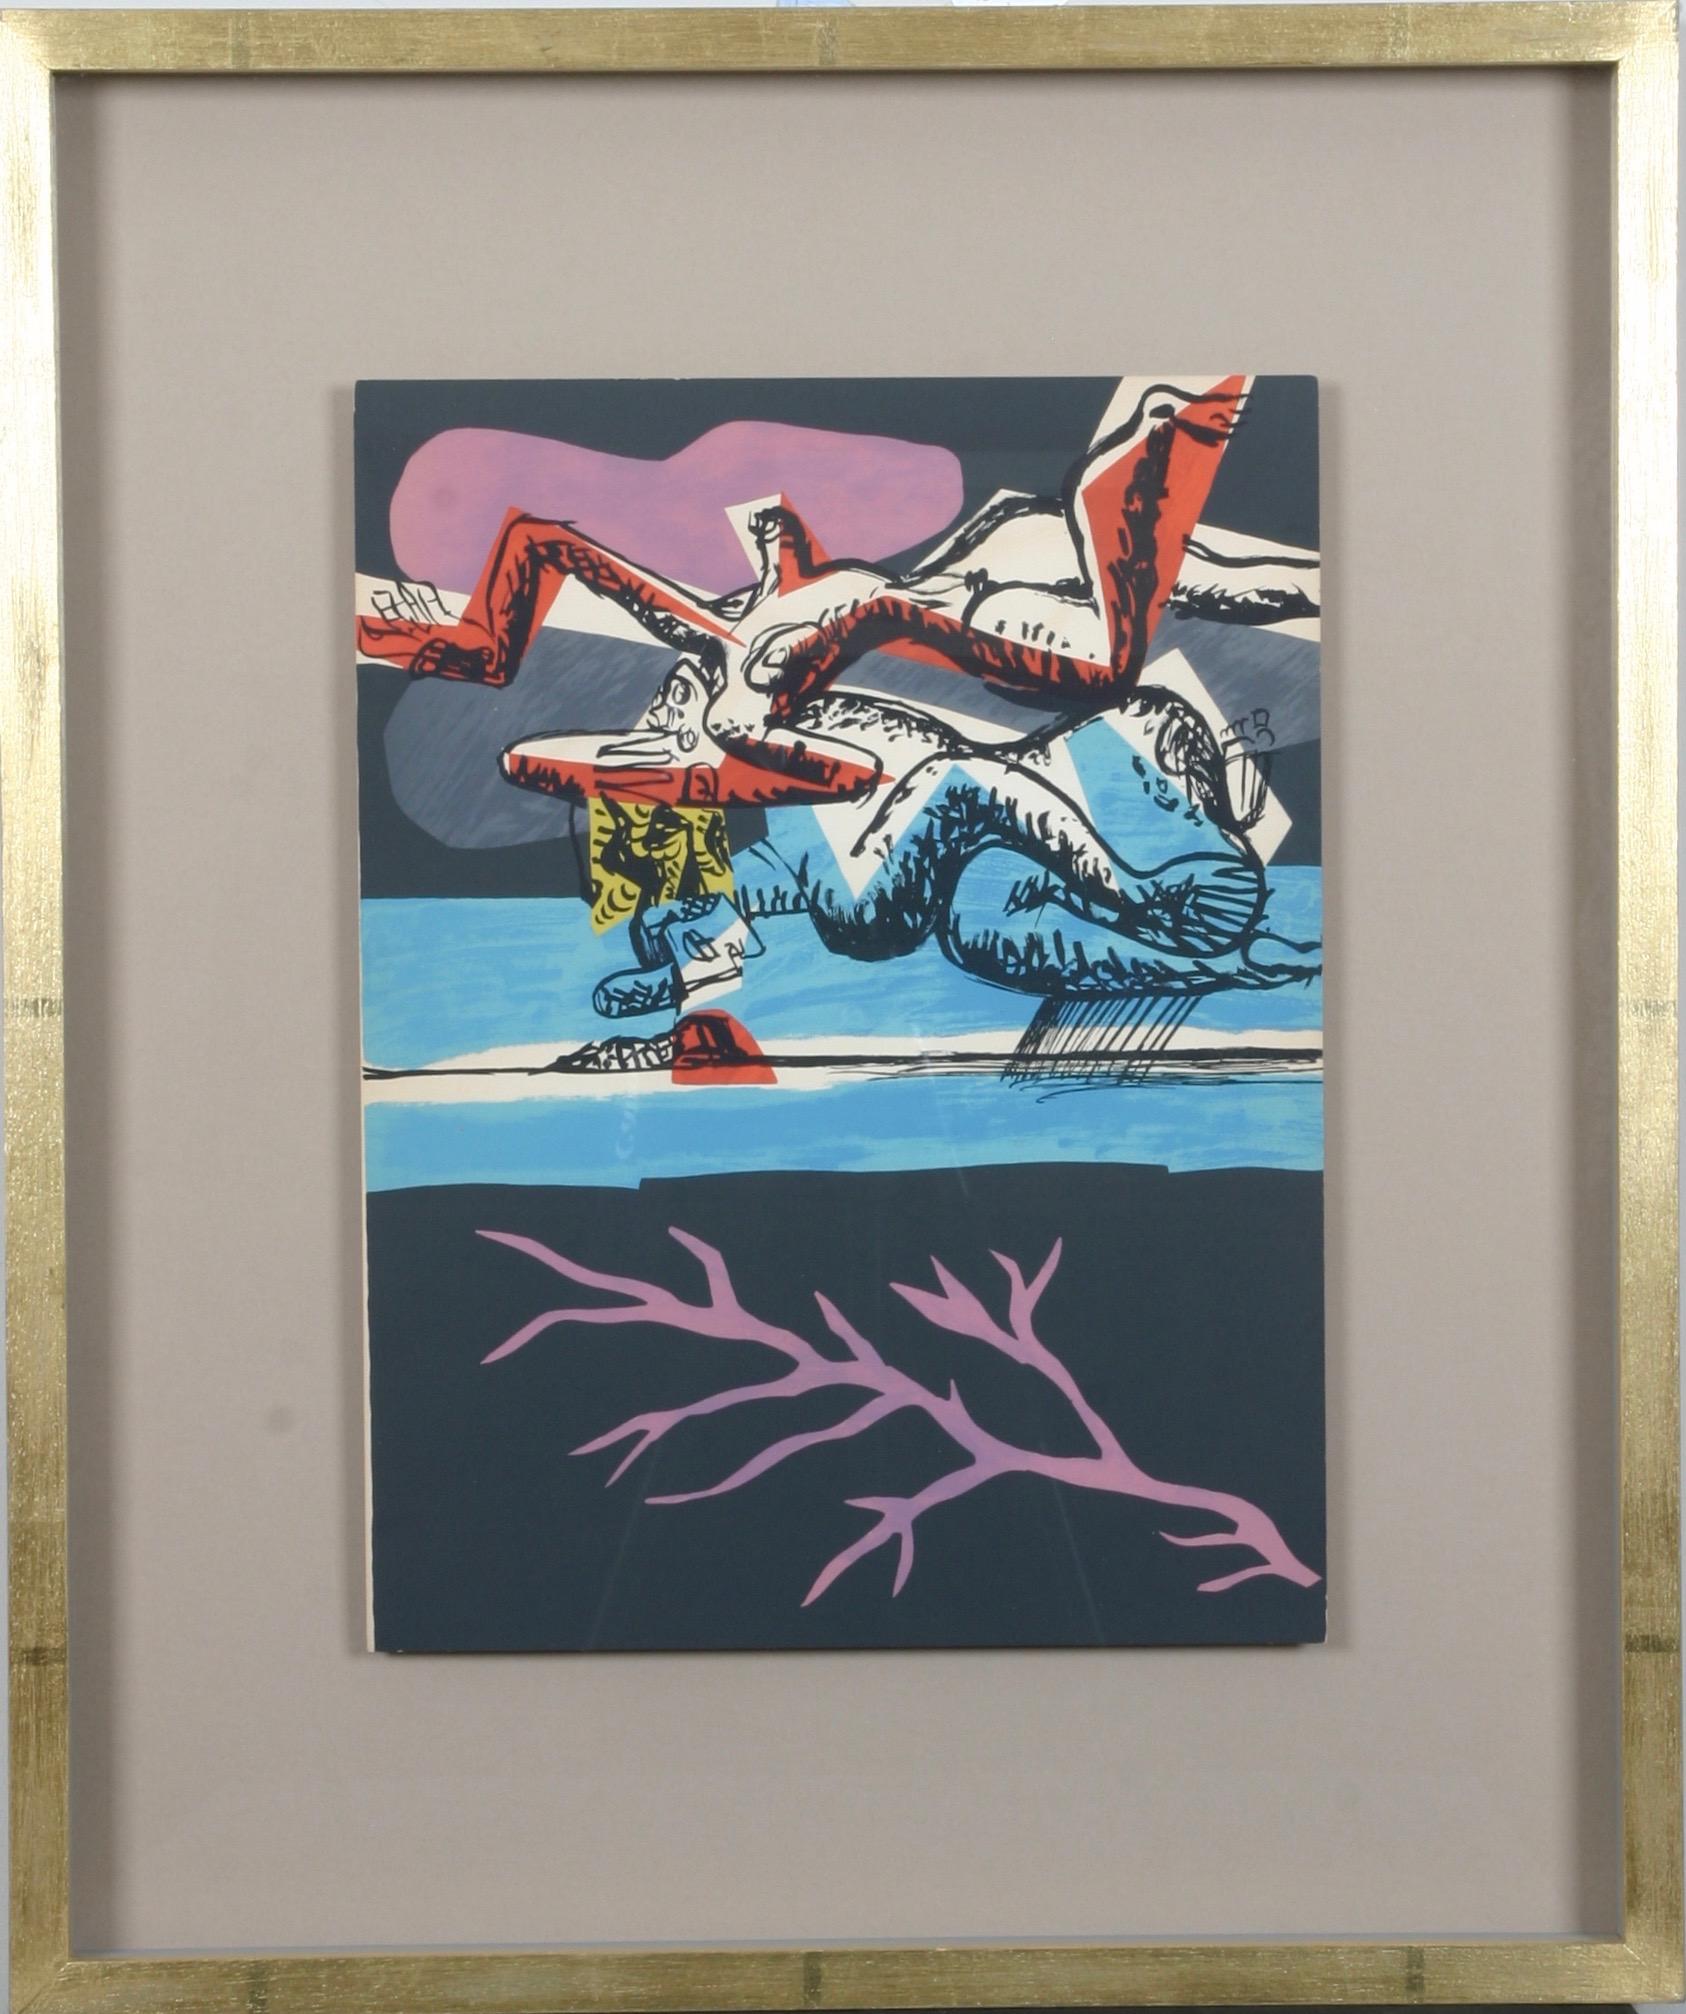 Le Corbusier: "Le Poème de L'Angle Droit". Original lithograph.